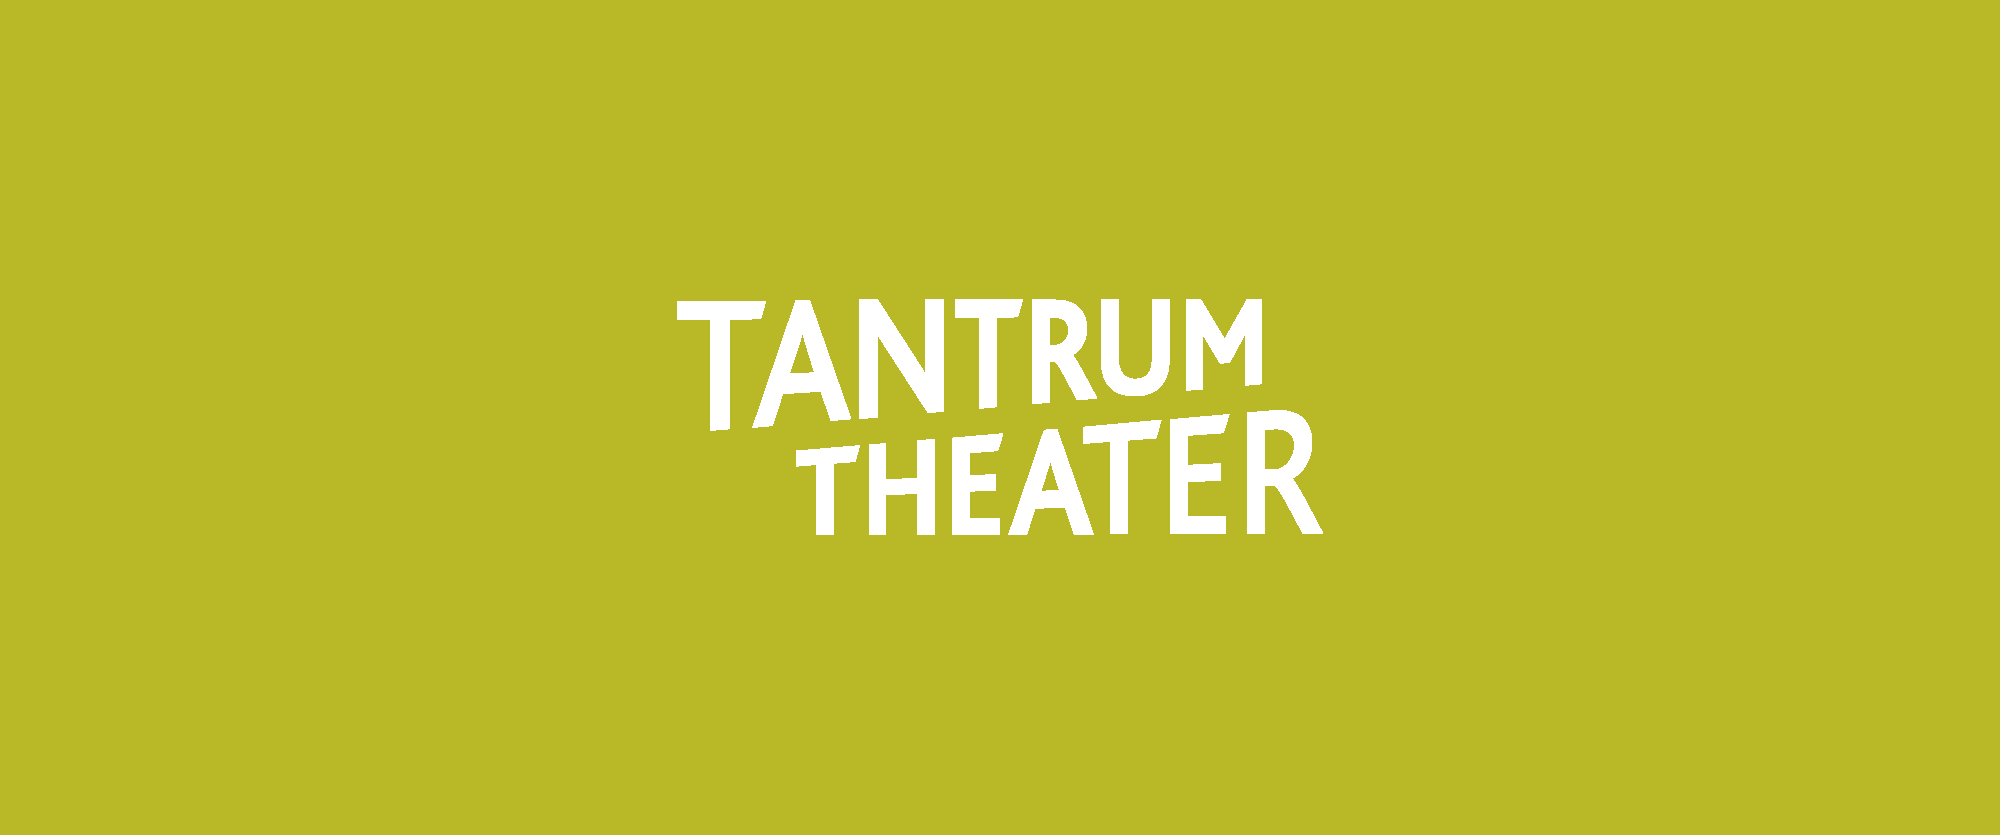 Tantrum Theater